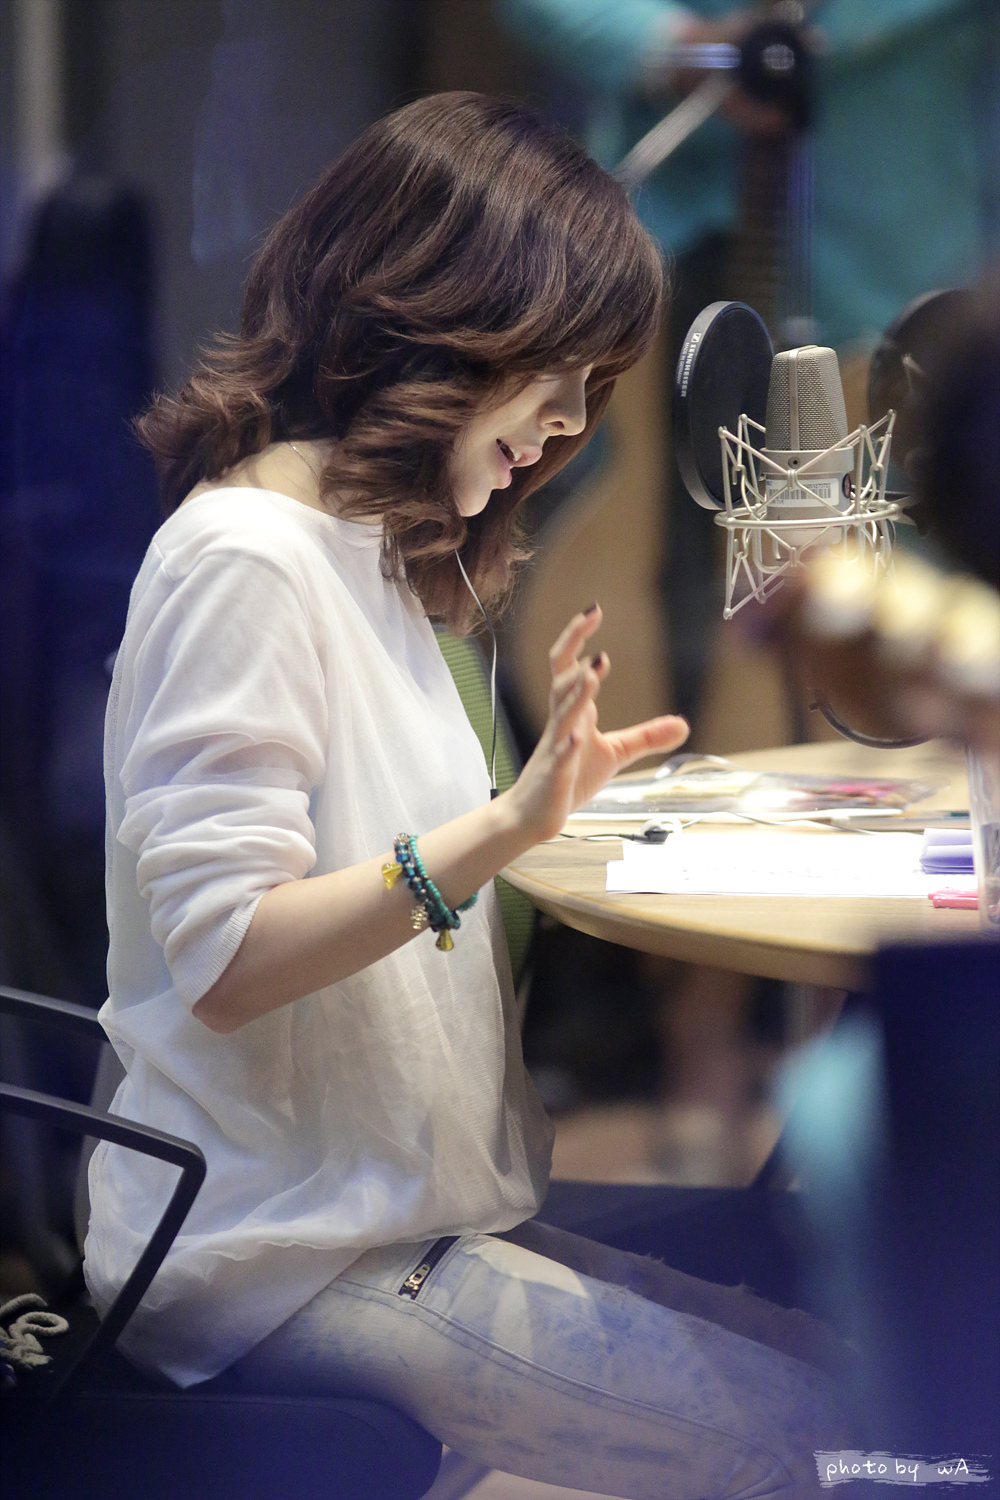 [OTHER][06-05-2014]Hình ảnh mới nhất từ DJ Sunny tại Radio MBC FM4U - "FM Date" - Page 15 2753D53553FDFF3B0D12E8